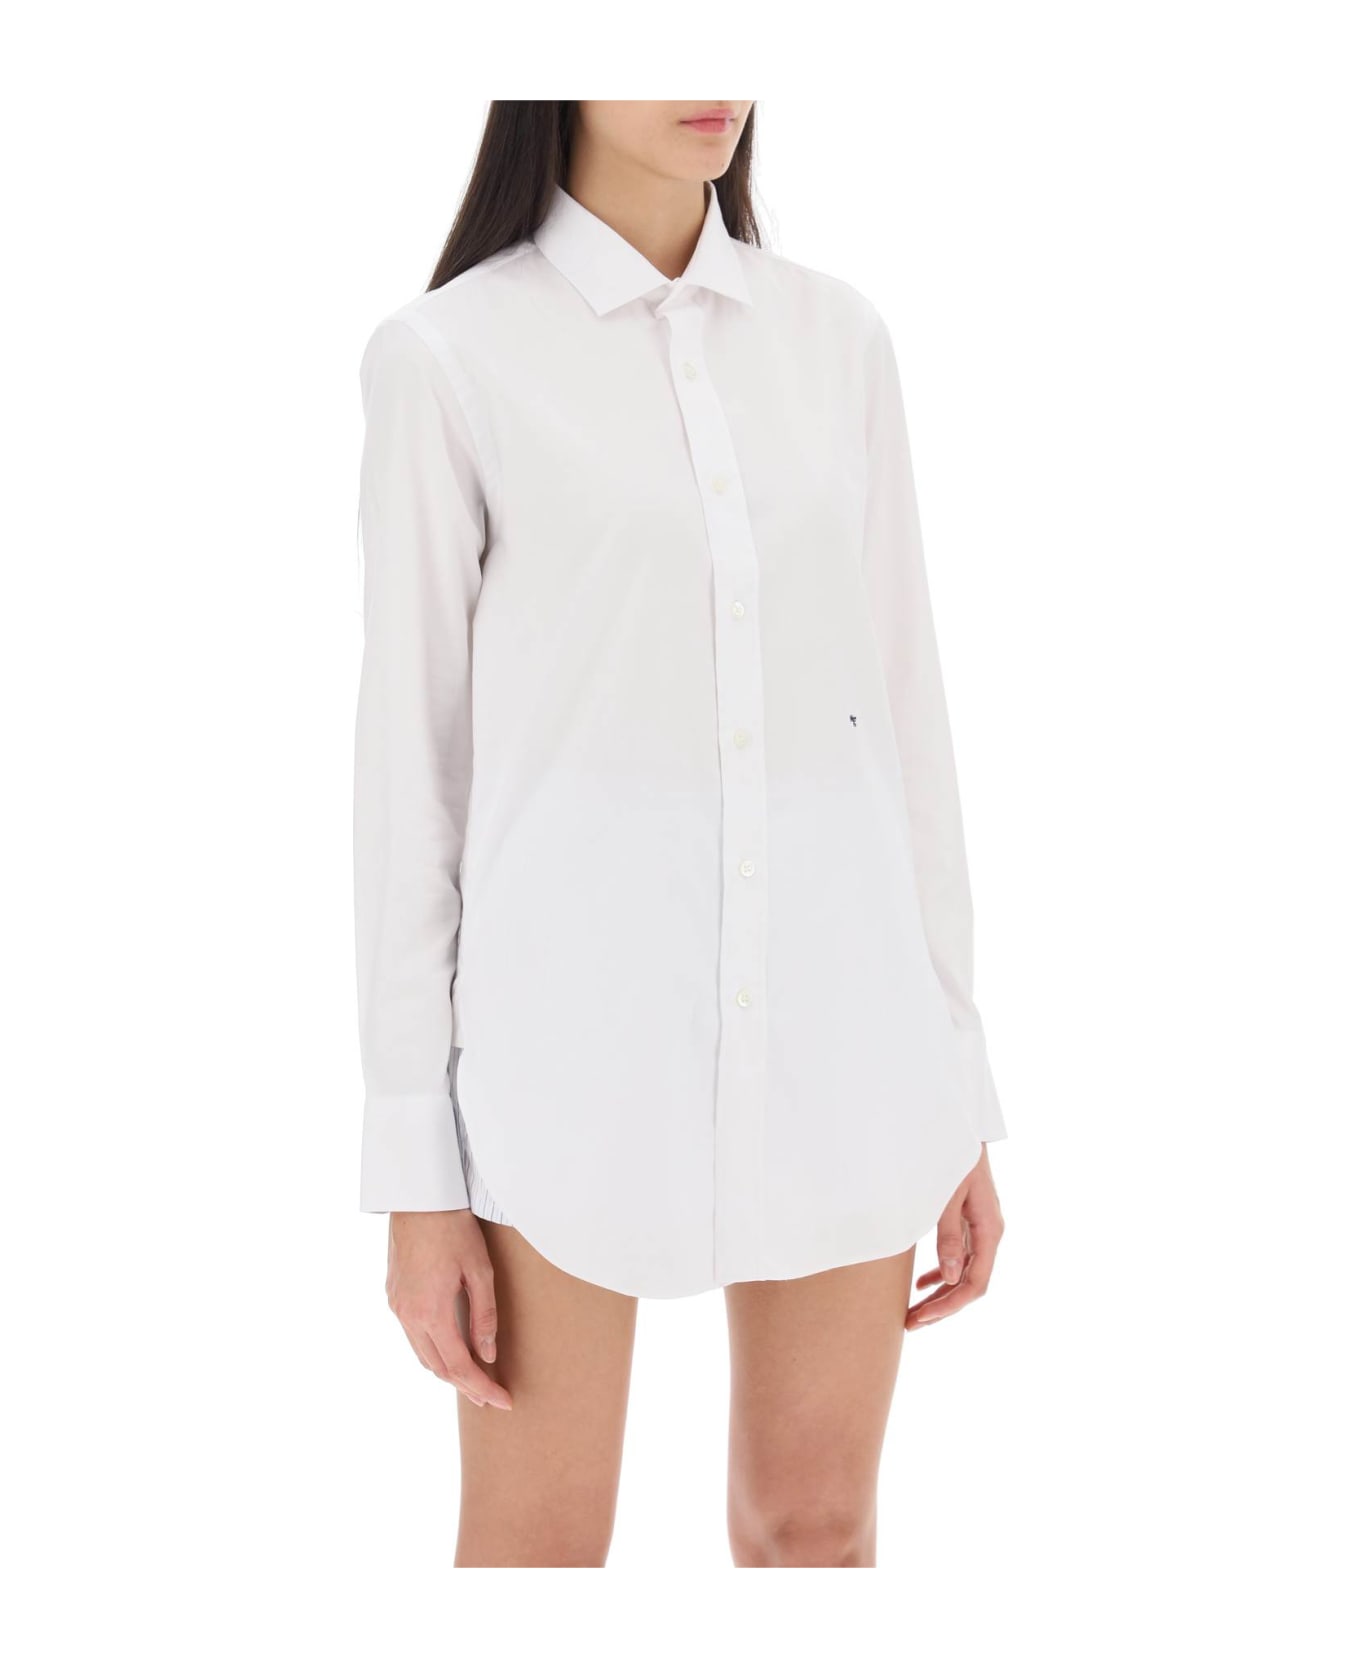 HommeGirls Cotton Twill Shirt - WHITE (White)